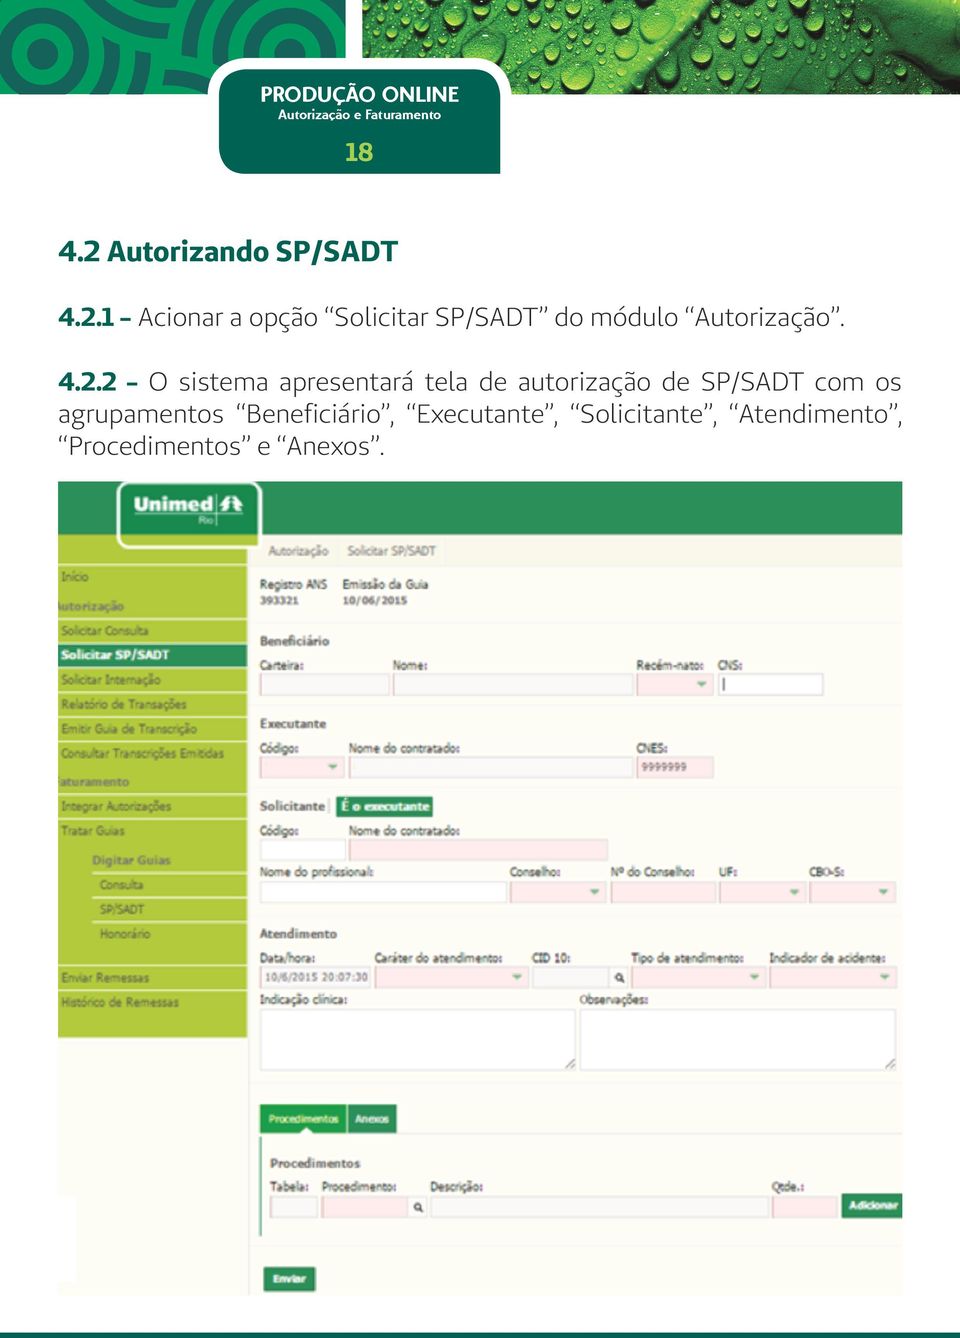 1 - Acionar a opção Solicitar SP/SADT do módulo Autorização.